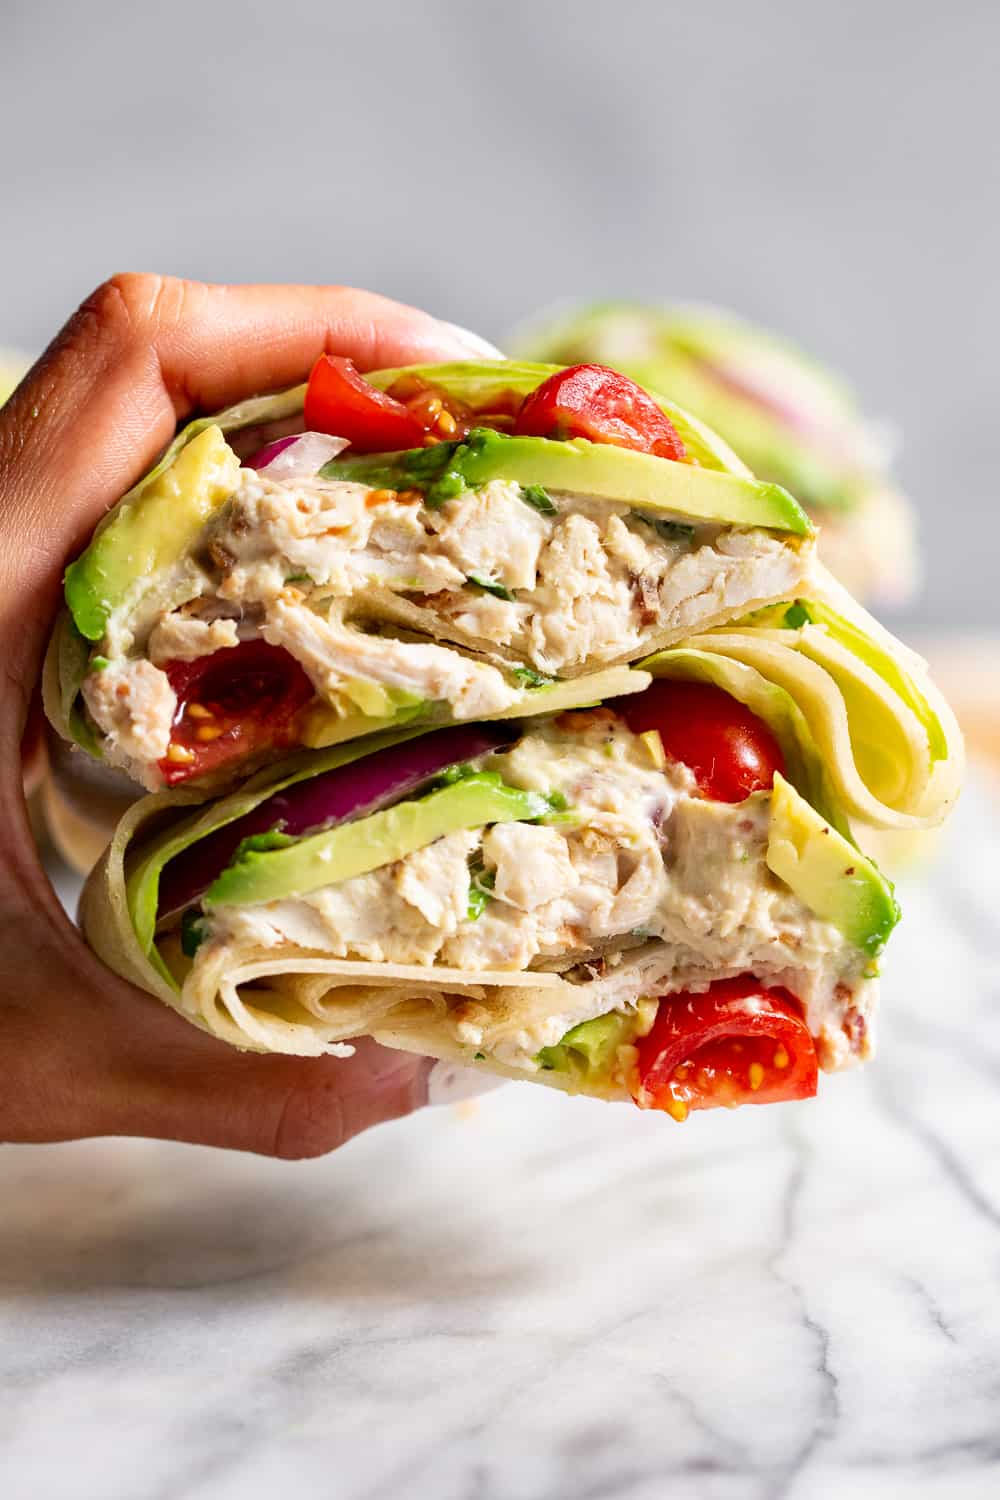 Easy Chicken & Salad Wraps recipe